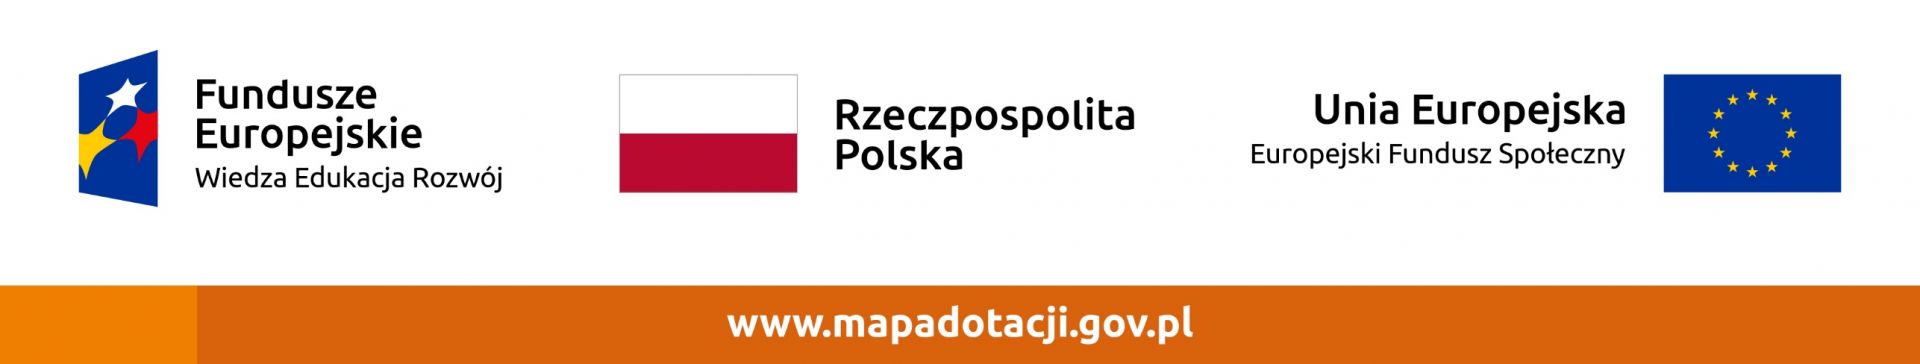 Loga fundatorów projektu, adres strony www.mapadotacji.gov.pl